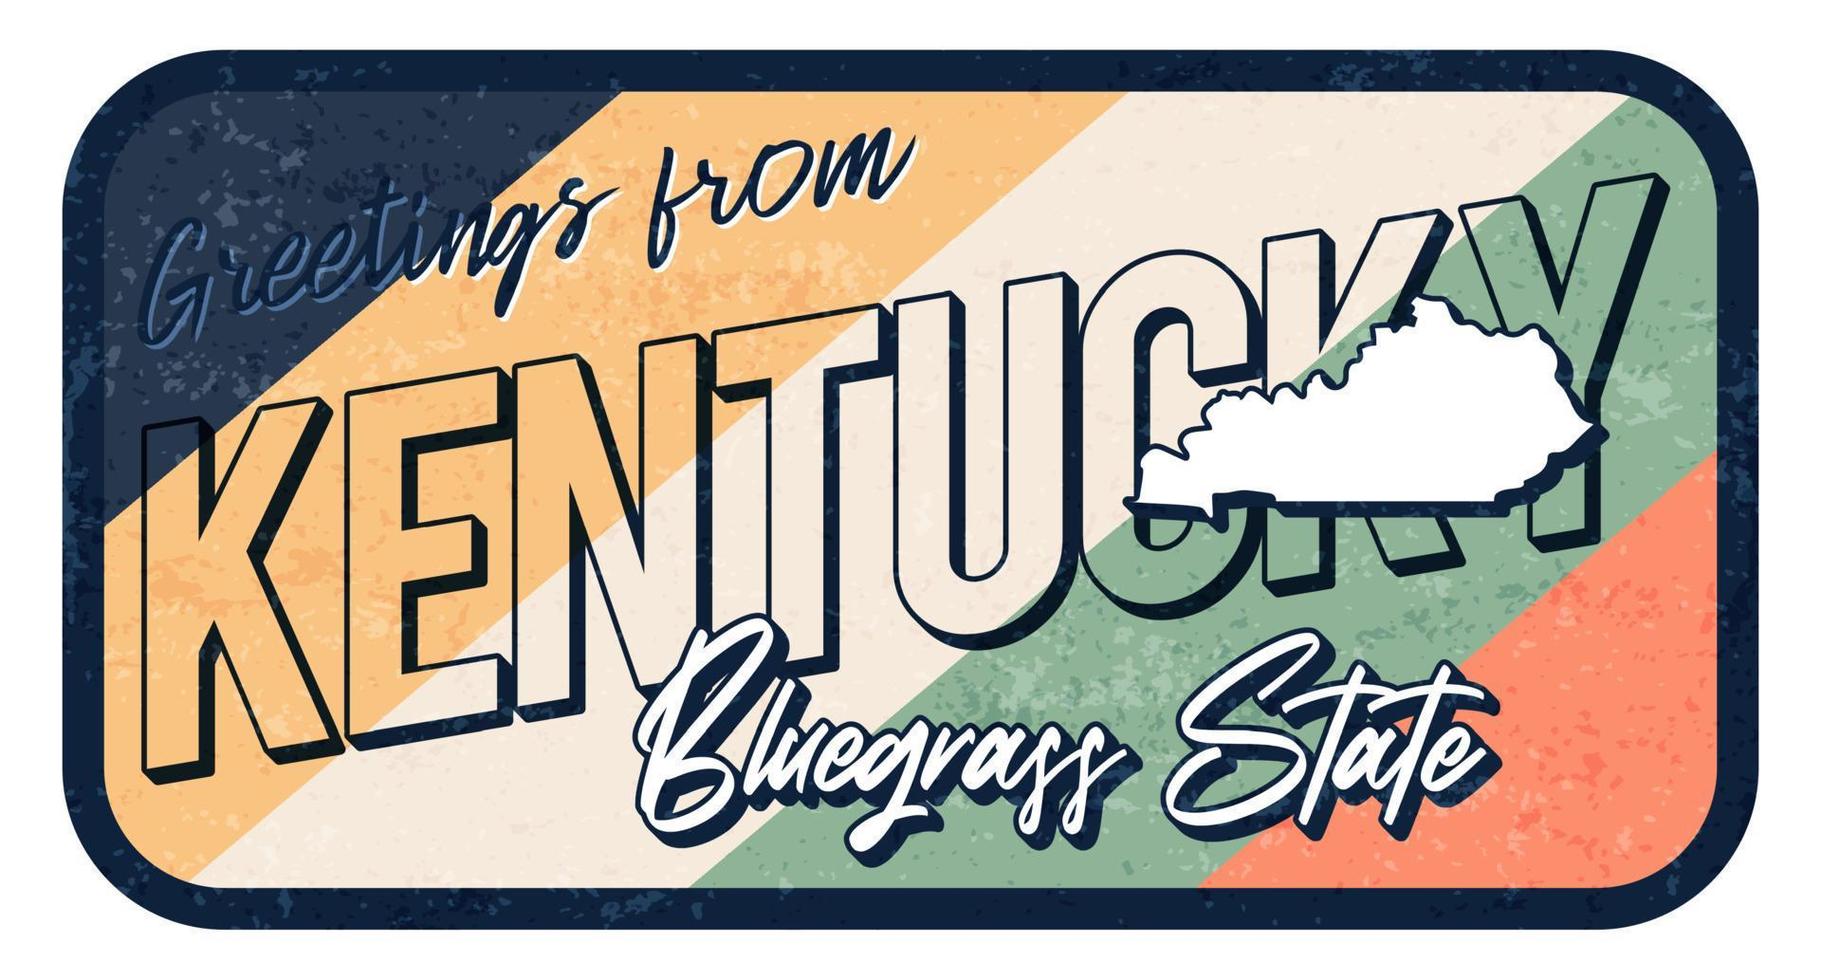 saluto dall'illustrazione vettoriale del segno di metallo arrugginito vintage del Kentucky. mappa di stato vettoriale in stile grunge con scritte disegnate a mano tipografia.